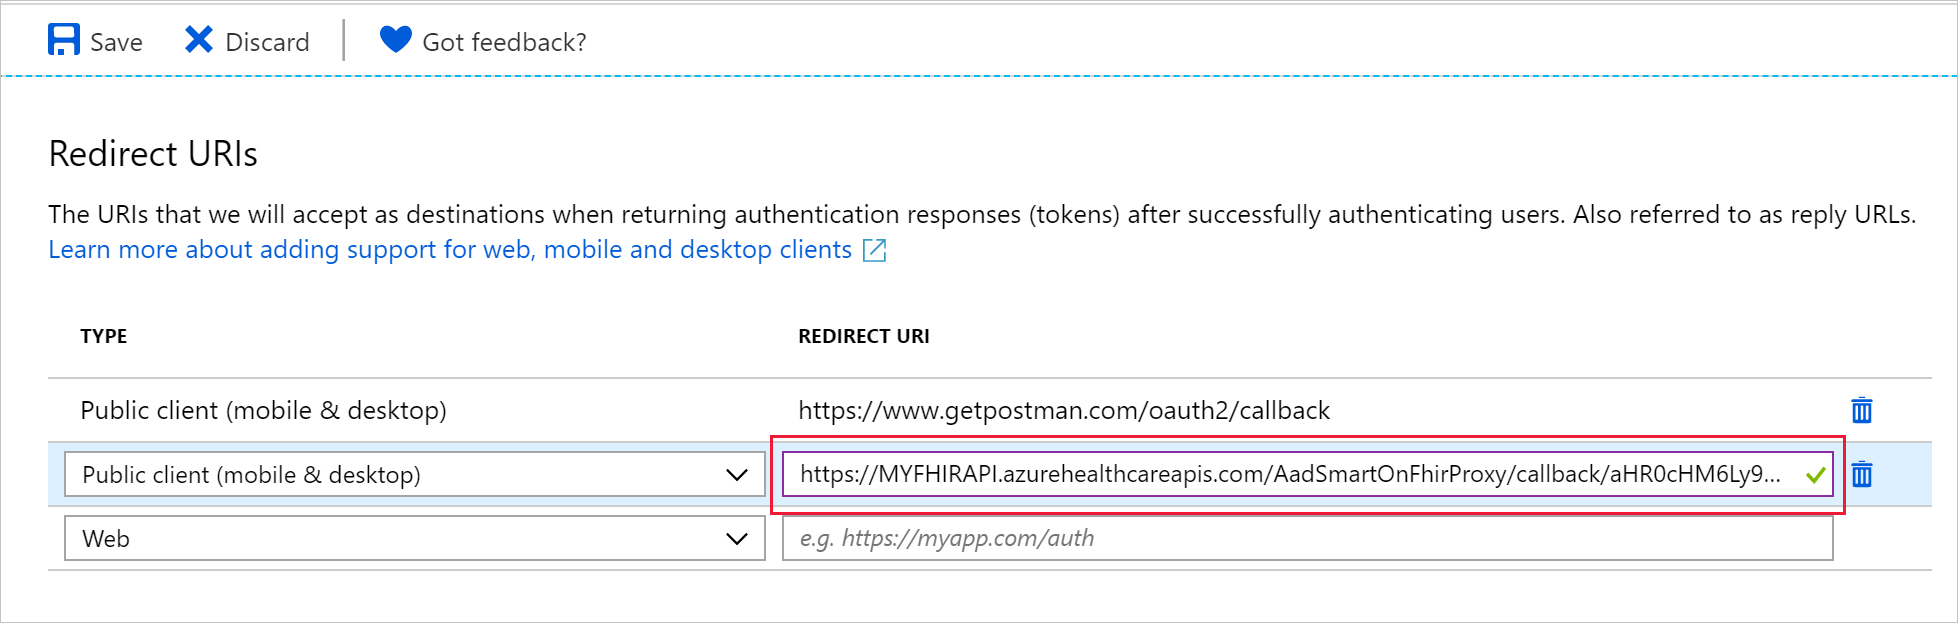 Captura de pantalla que muestra cómo se puede configurar la dirección URL de respuesta para el cliente público.